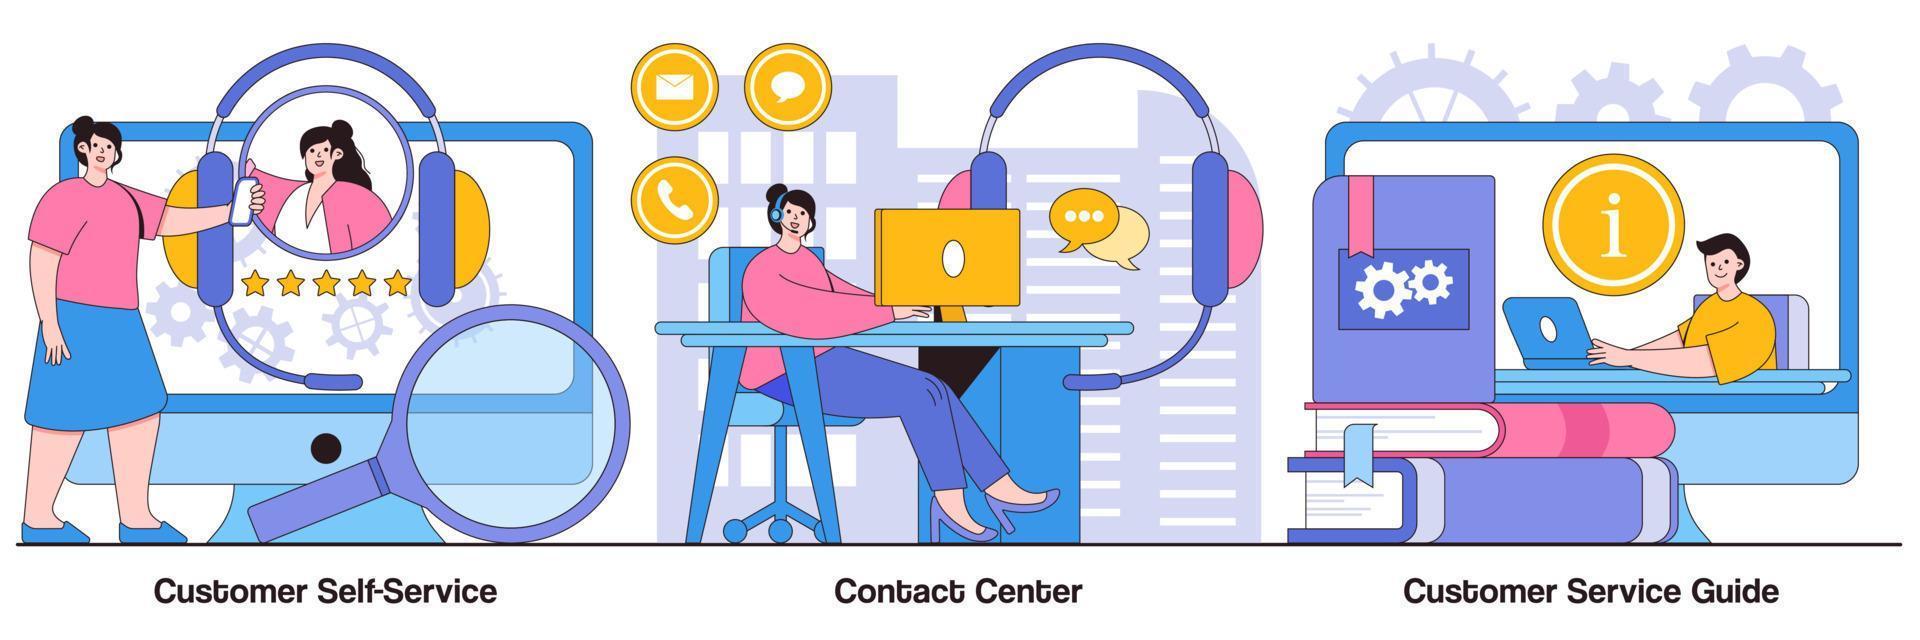 pacote ilustrado de autoatendimento ao cliente, centro de contato e guia de atendimento ao cliente vetor